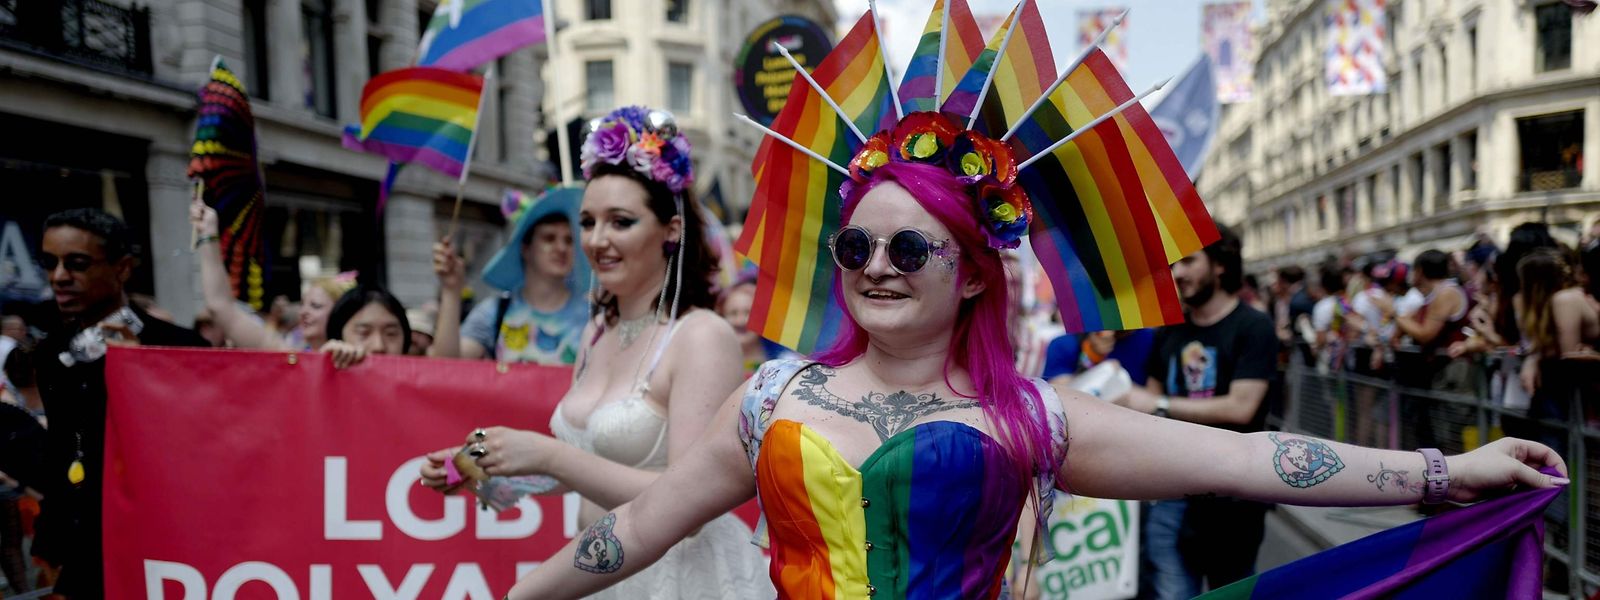 Mitglieder der Lesbian-Gay-Bisexual-Transgender-Community (LGBT) feierten am Samstag in den Straßen von London.